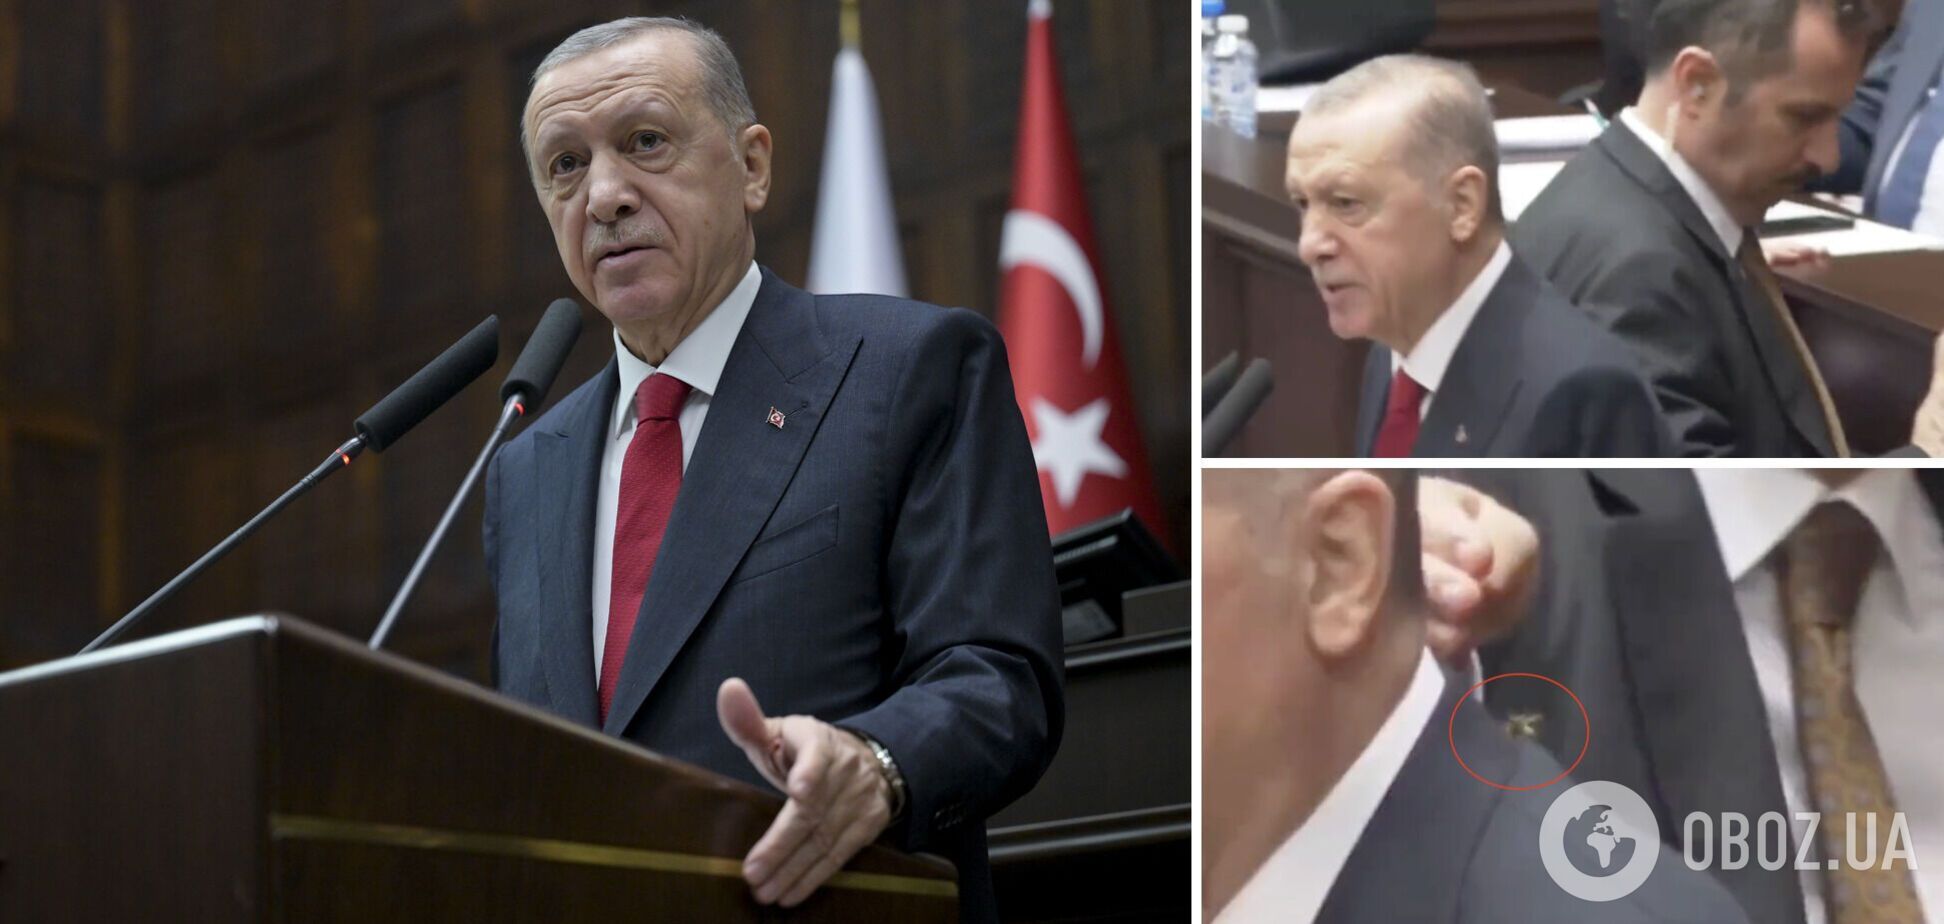 Охранник Эрдогана профессионально ликвидировал осу, которая села на плечо президента. Видео курьеза